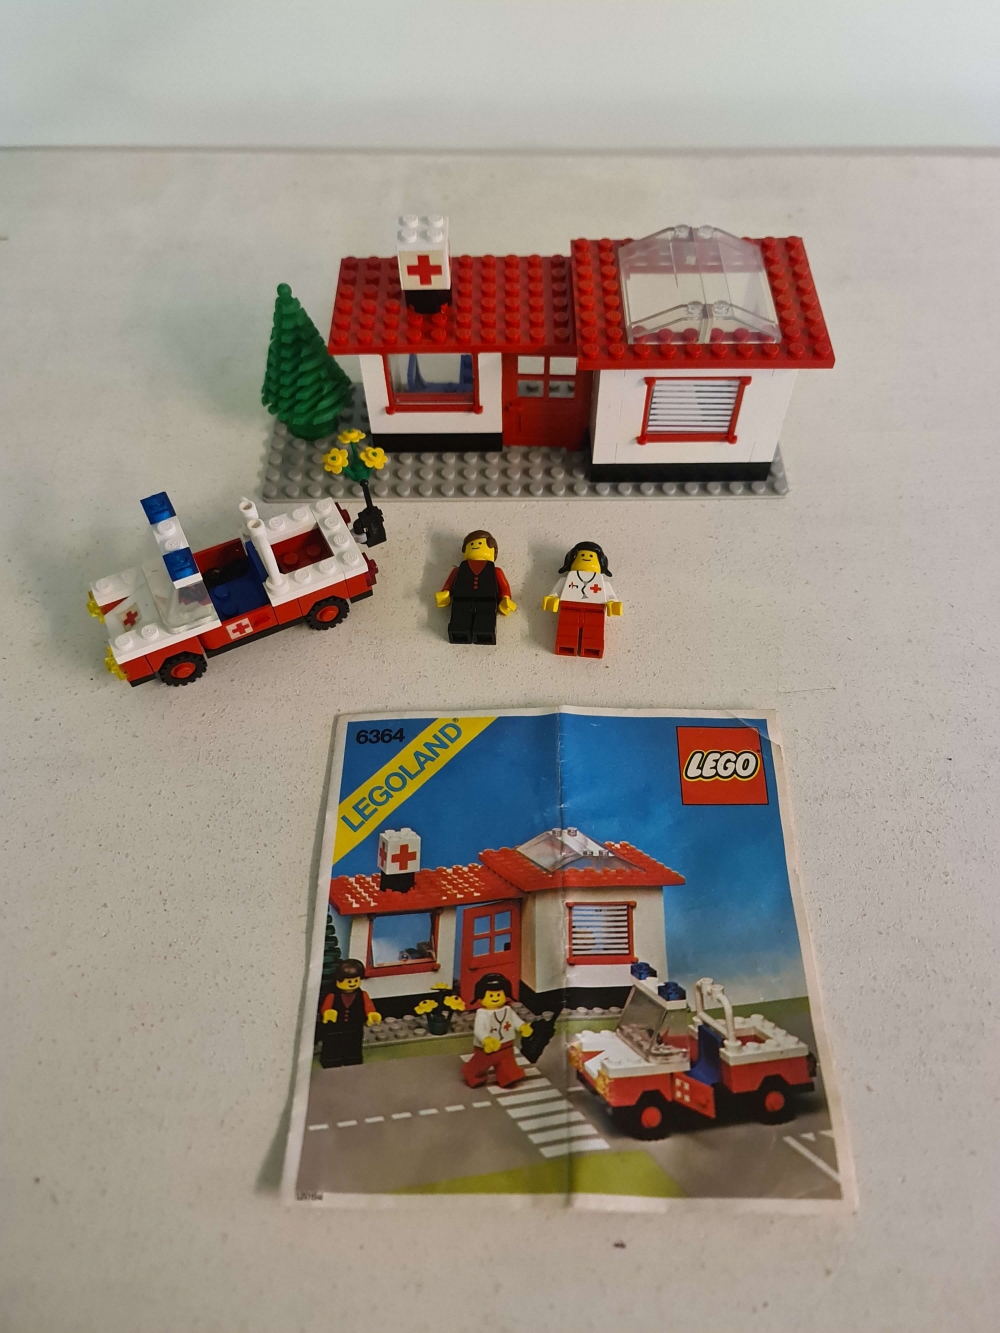 Sett 6364 fra Lego Classic Town serien.
Nydelig sett. Komplett med manual.
Alle klistremerker originale og fine.